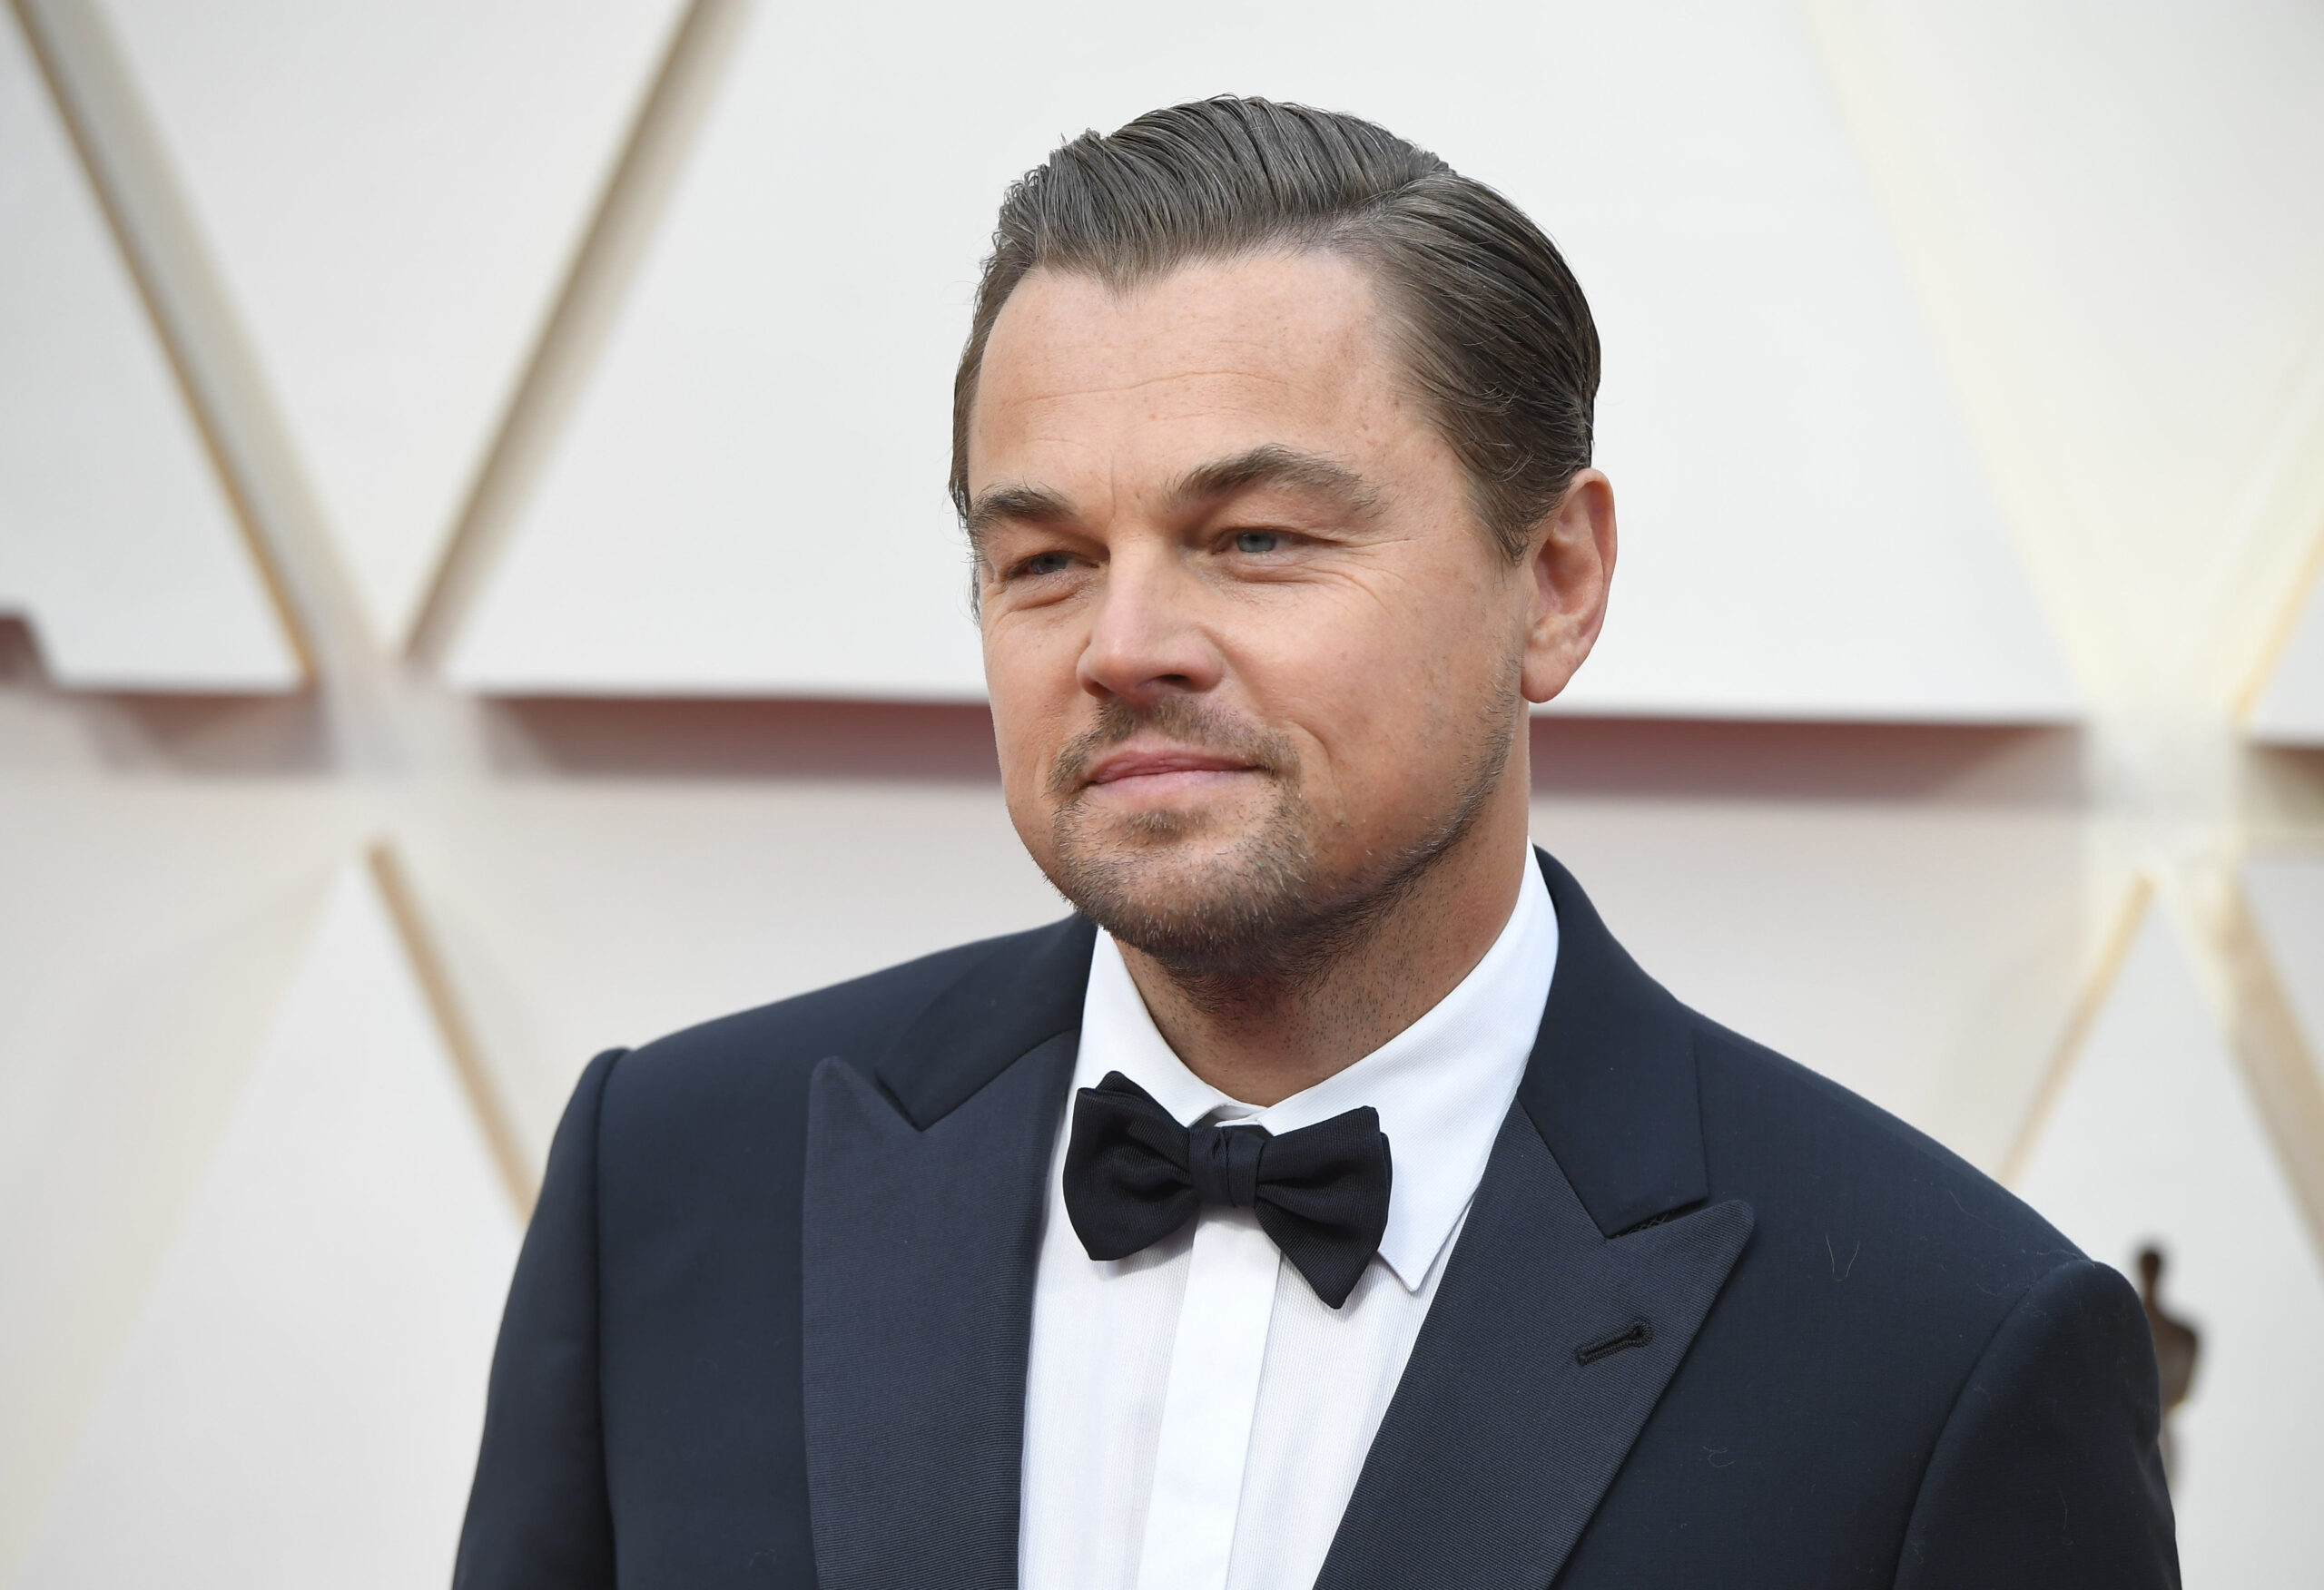 Schauspieler Leonardo DiCaprio